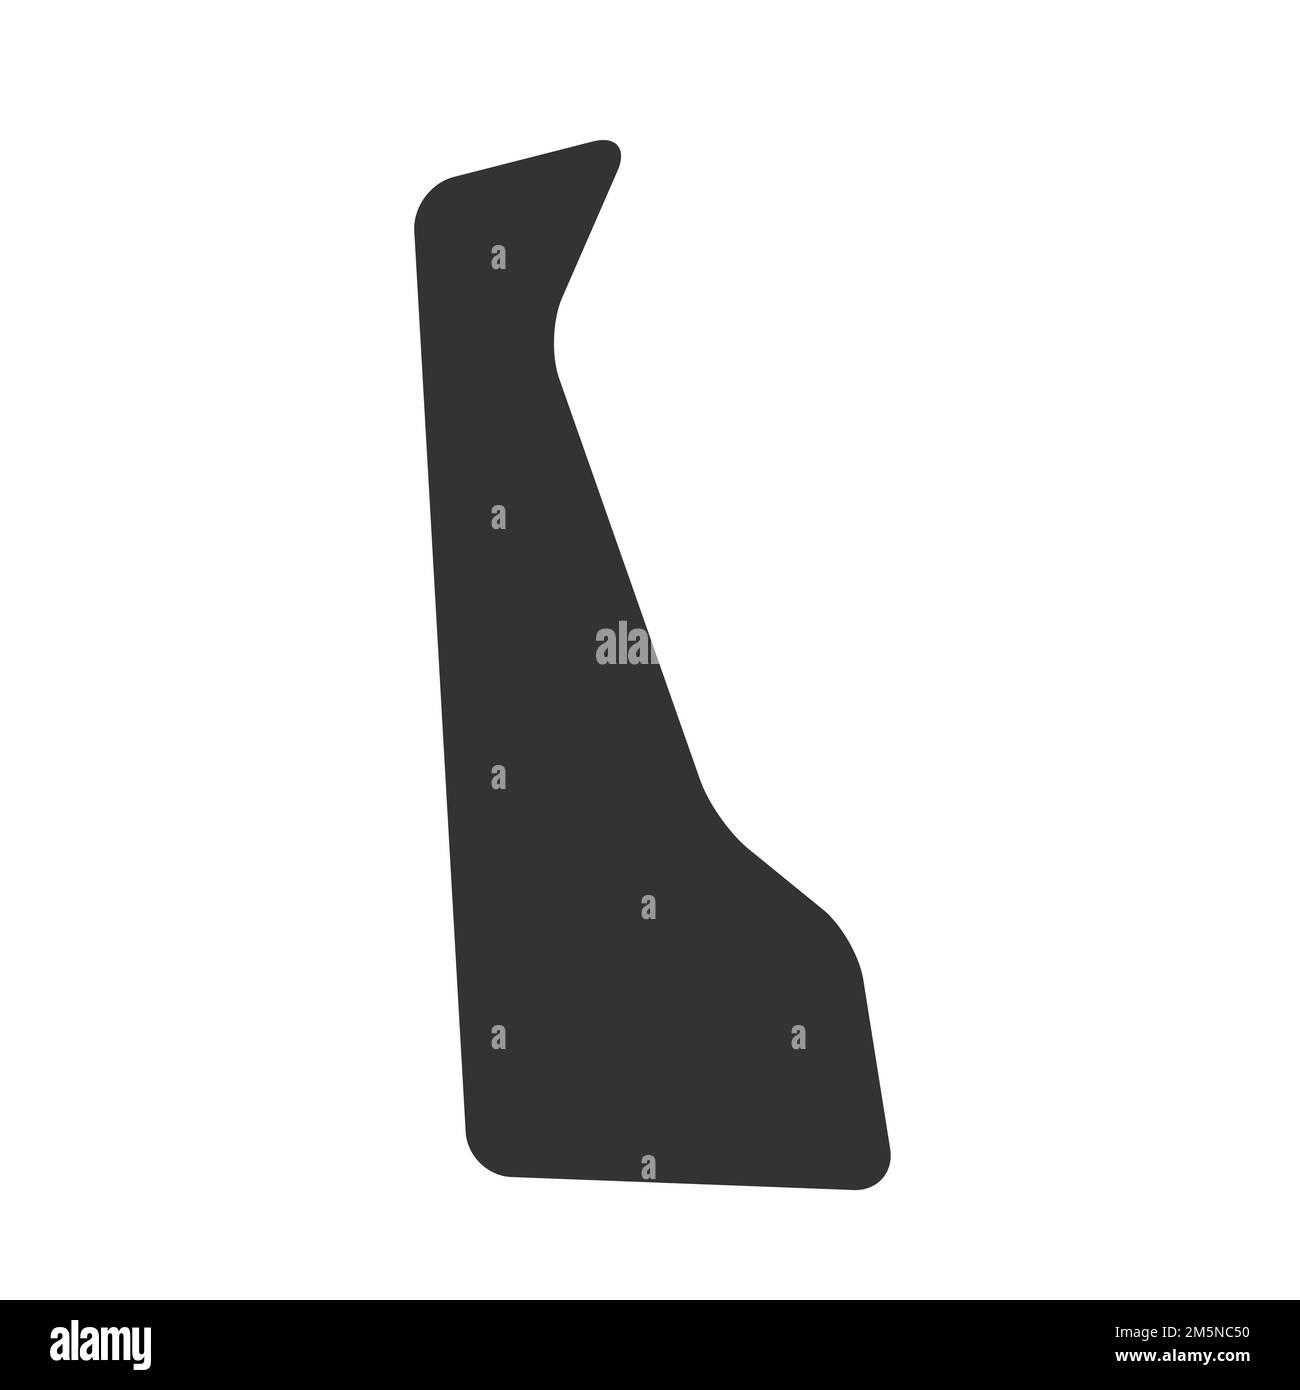 Bundesstaat Delaware, Vereinigte Staaten von Amerika, USA. Vereinfachte Darstellung von dicken schwarzen Silhouetten mit abgerundeten Ecken. Einfache Darstellung eines flachen Vektors Stock Vektor